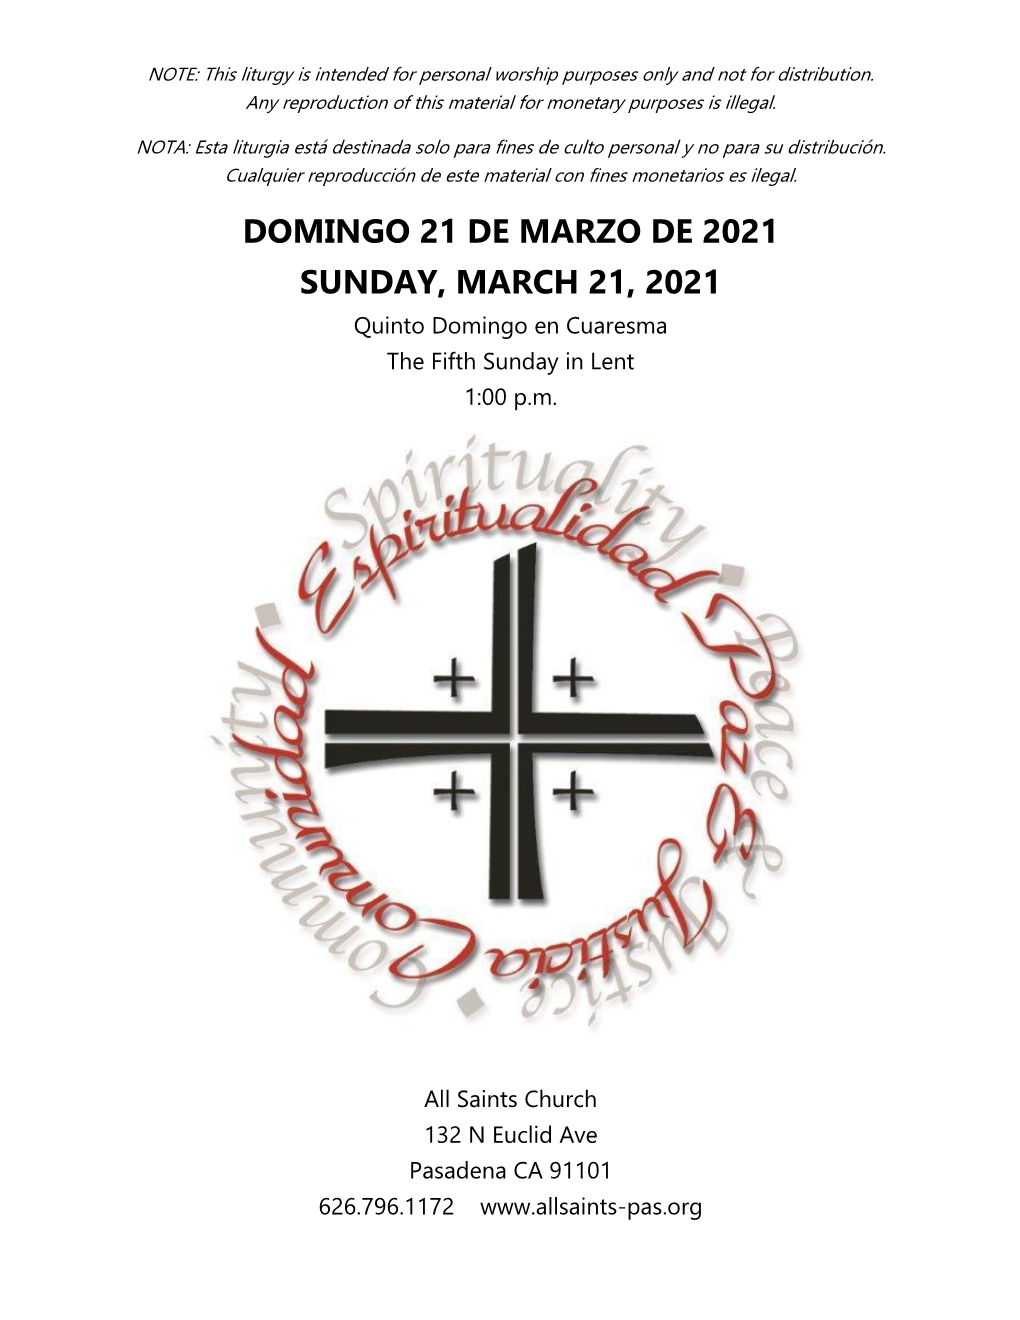 DOMINGO 21 DE MARZO DE 2021 SUNDAY, MARCH 21, 2021 Quinto Domingo En Cuaresma the Fifth Sunday in Lent 1:00 P.M